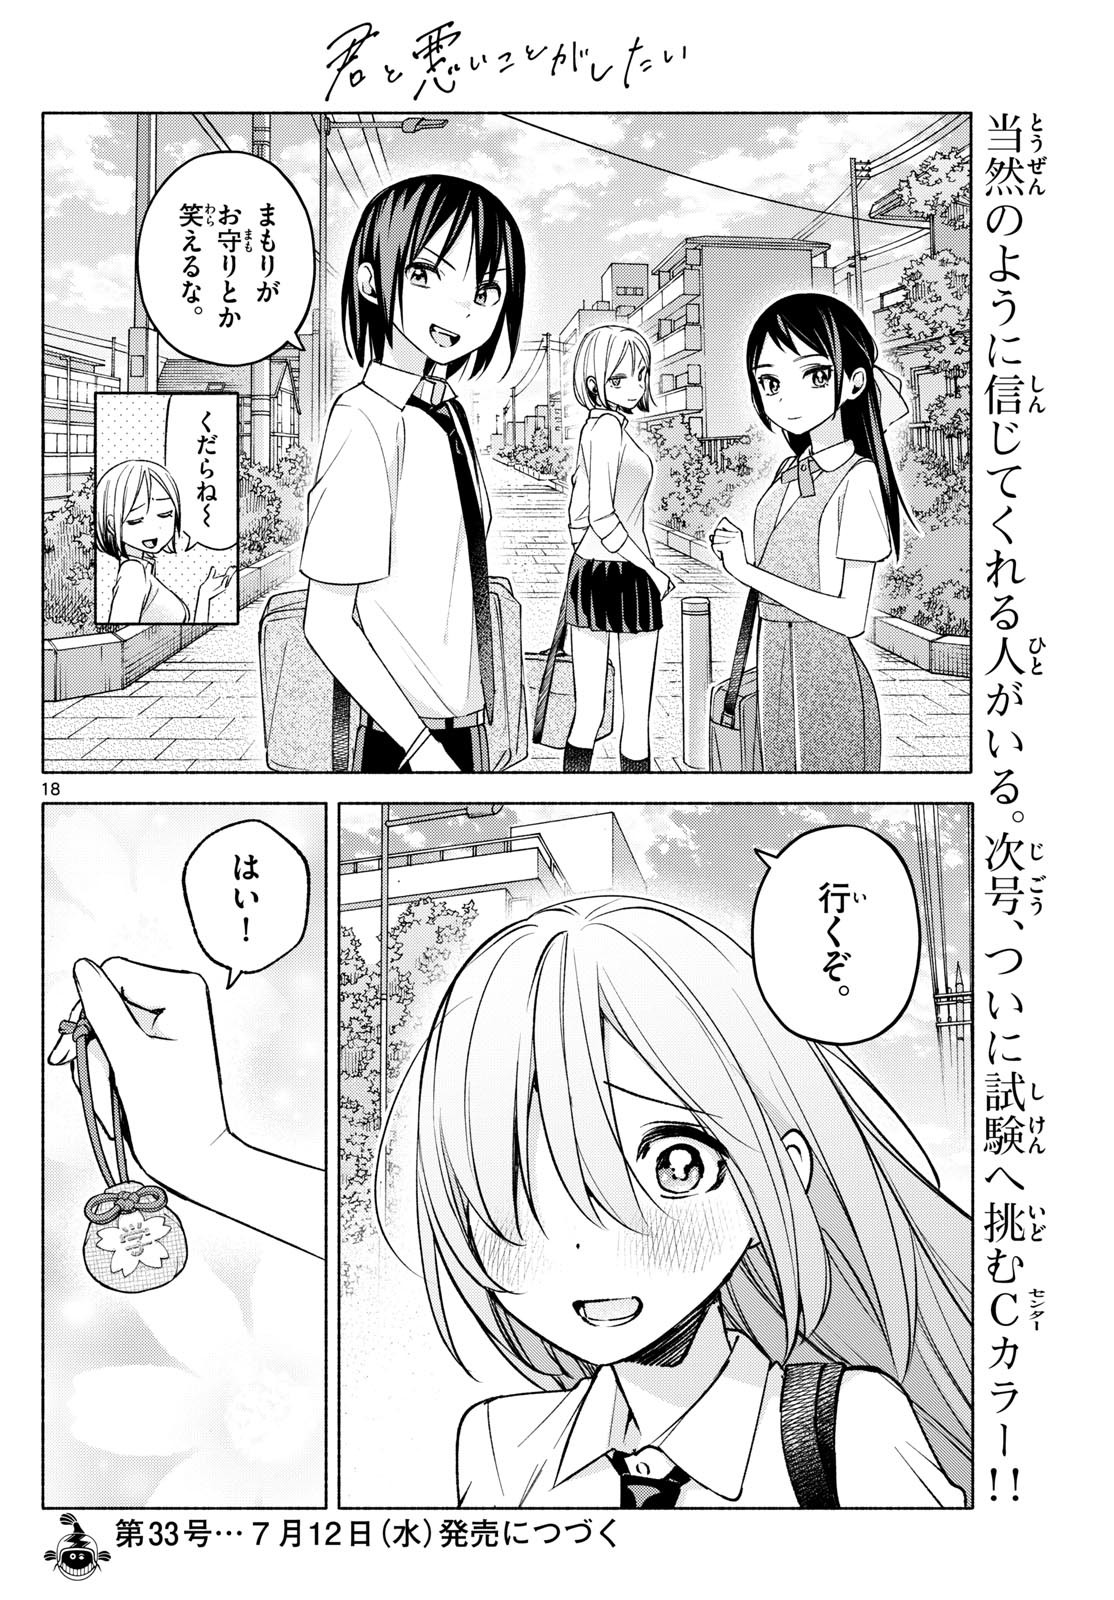 Kimi to Warui Koto ga Shitai - Chapter 035 - Page 18